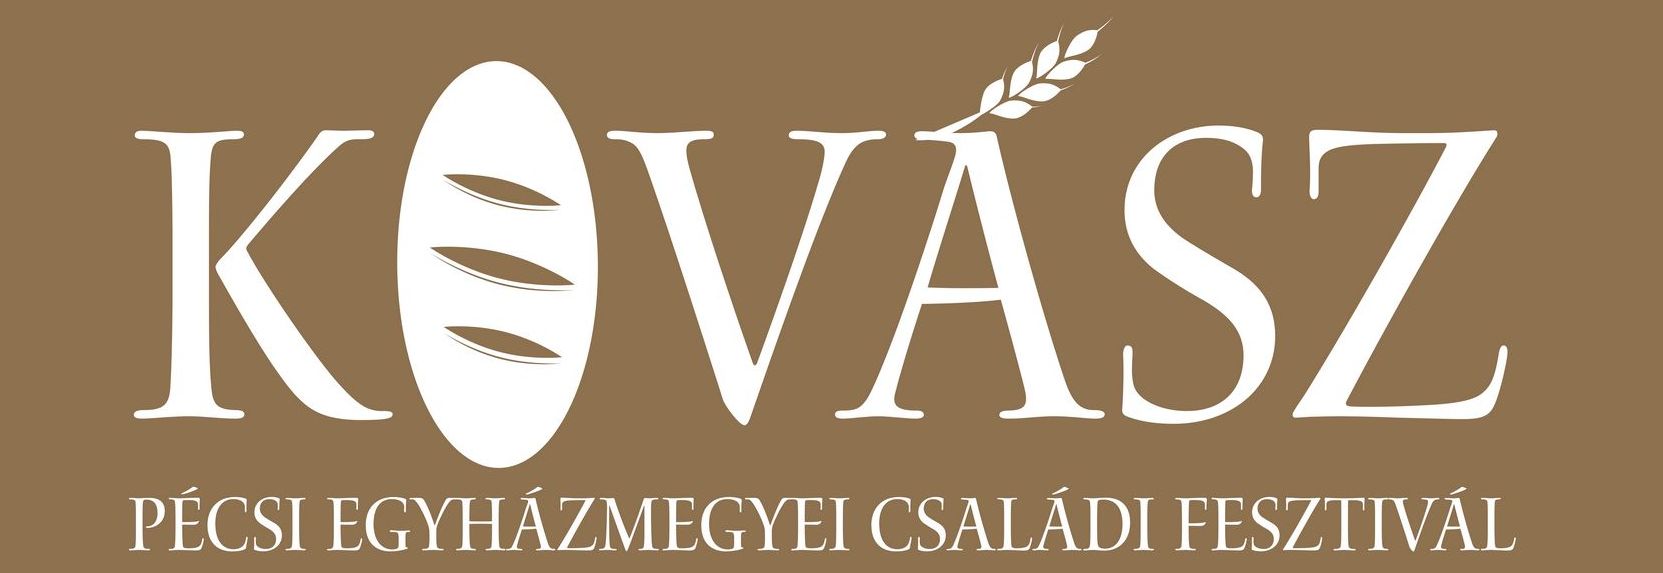 Kovasz banner1